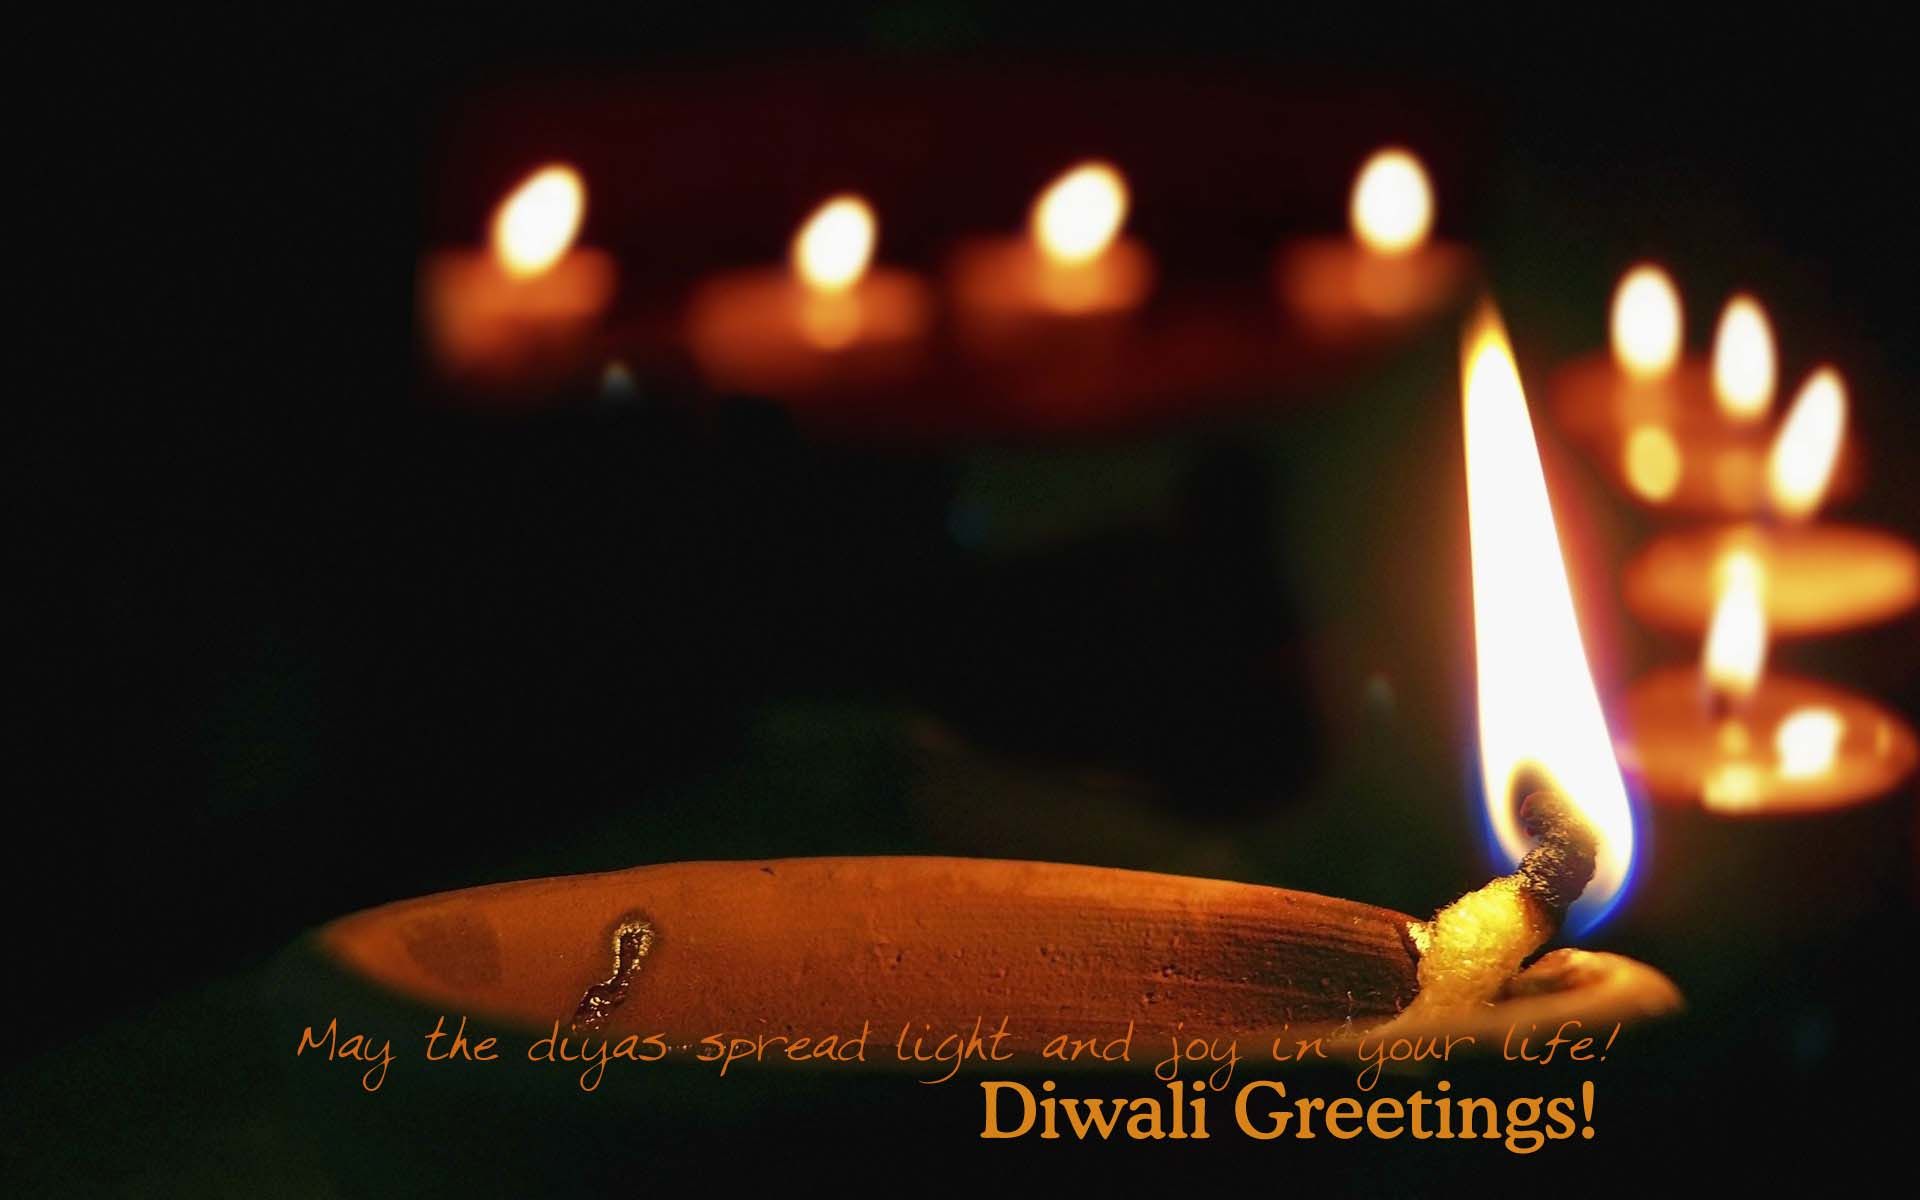 Diwali Greetings Wallpaper - Hd Diwali Images Download - HD Wallpaper 